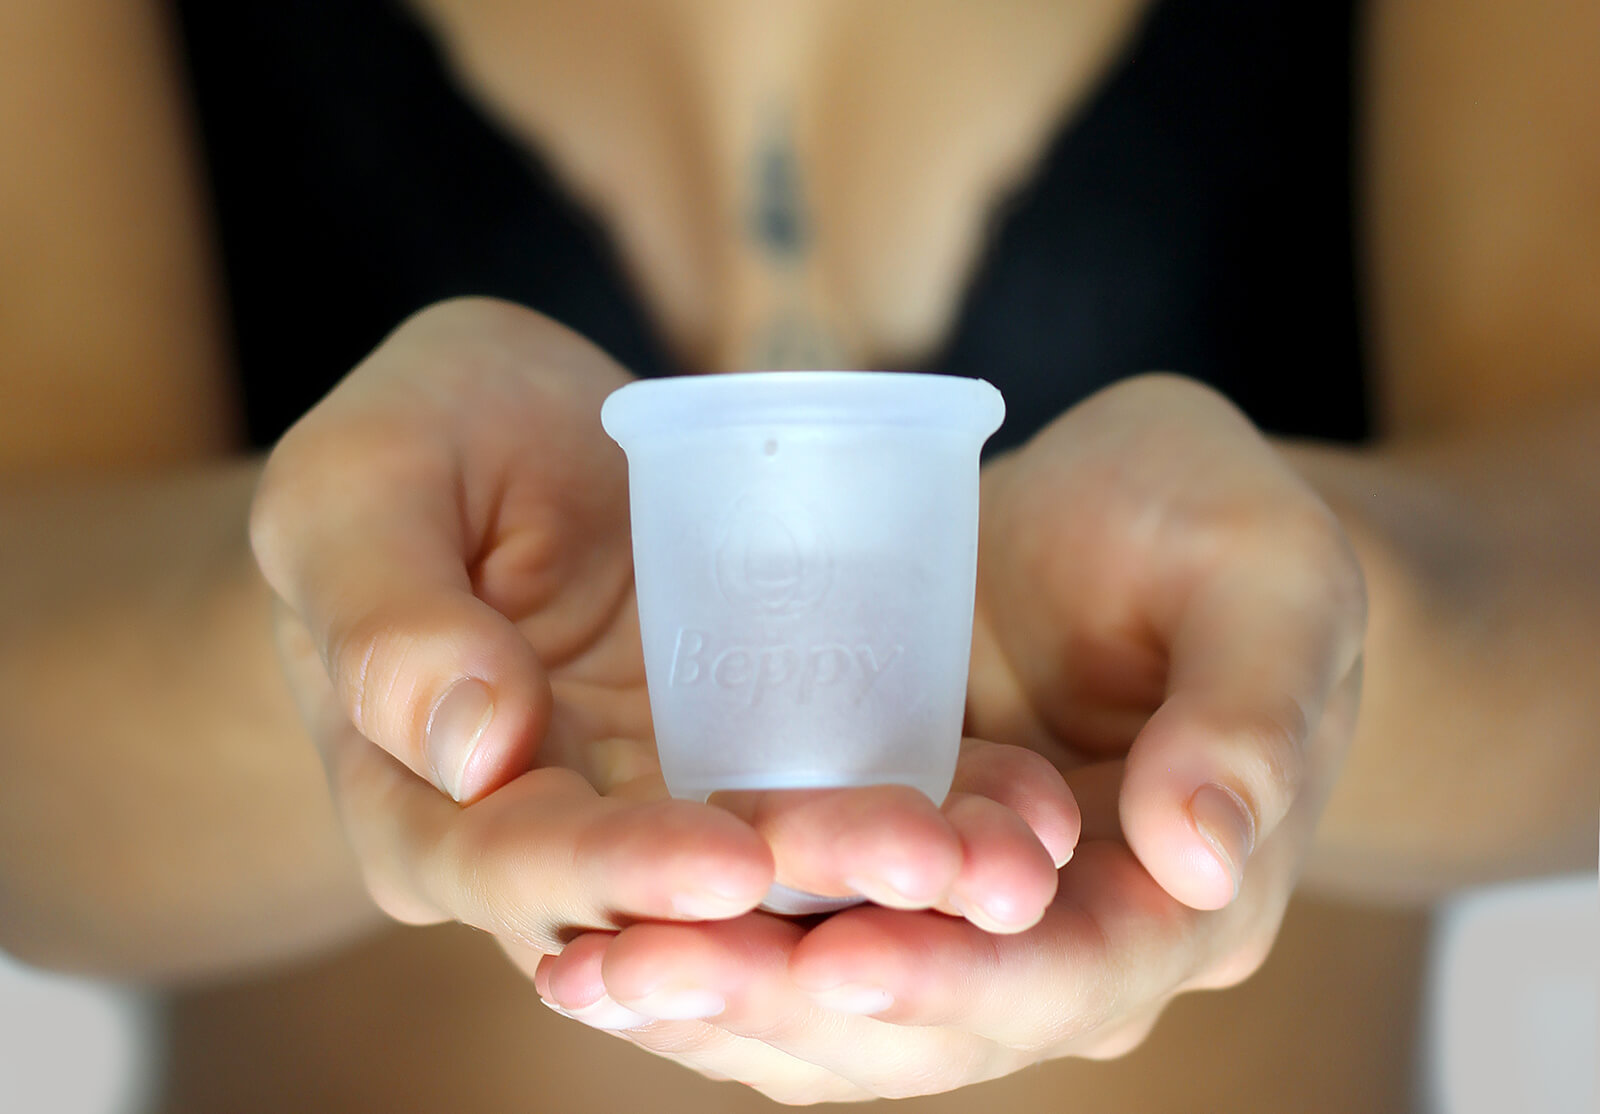 Kubeczek menstruacyjny Beppy Cup